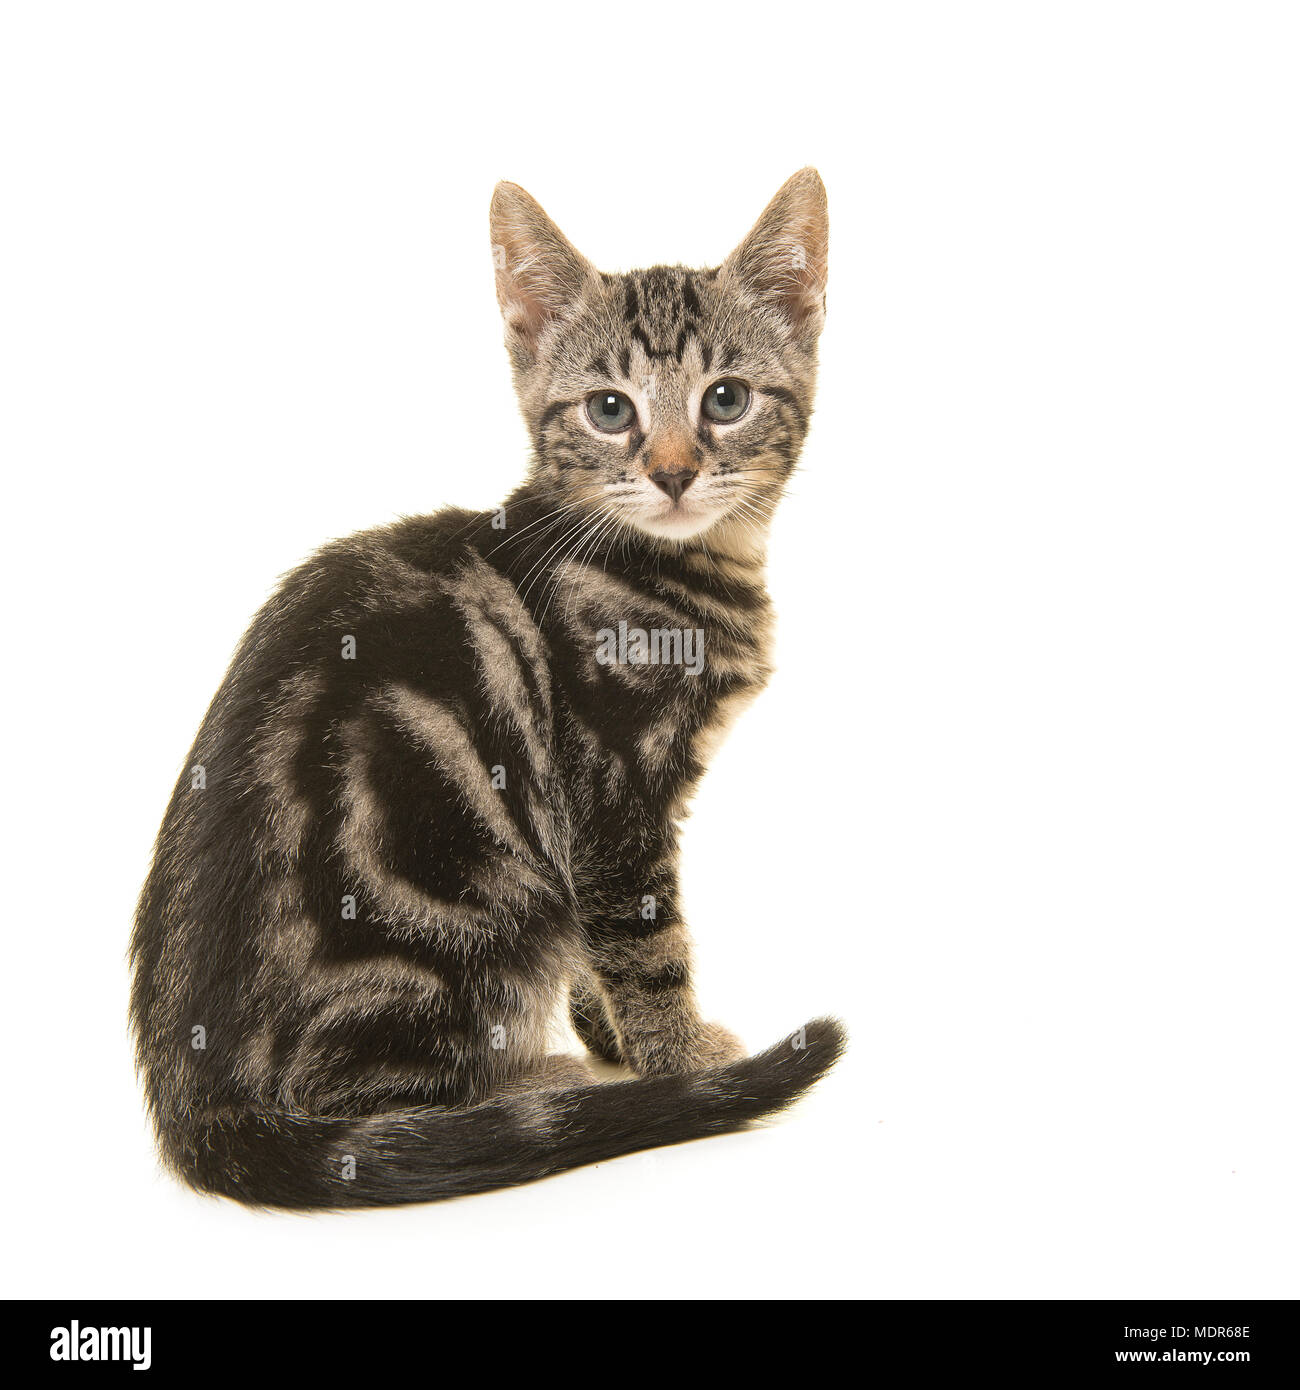 Giovani tabby cat visto dal lato guardando sopra la sua spalla verso la telecamera isolata su uno sfondo bianco Foto Stock